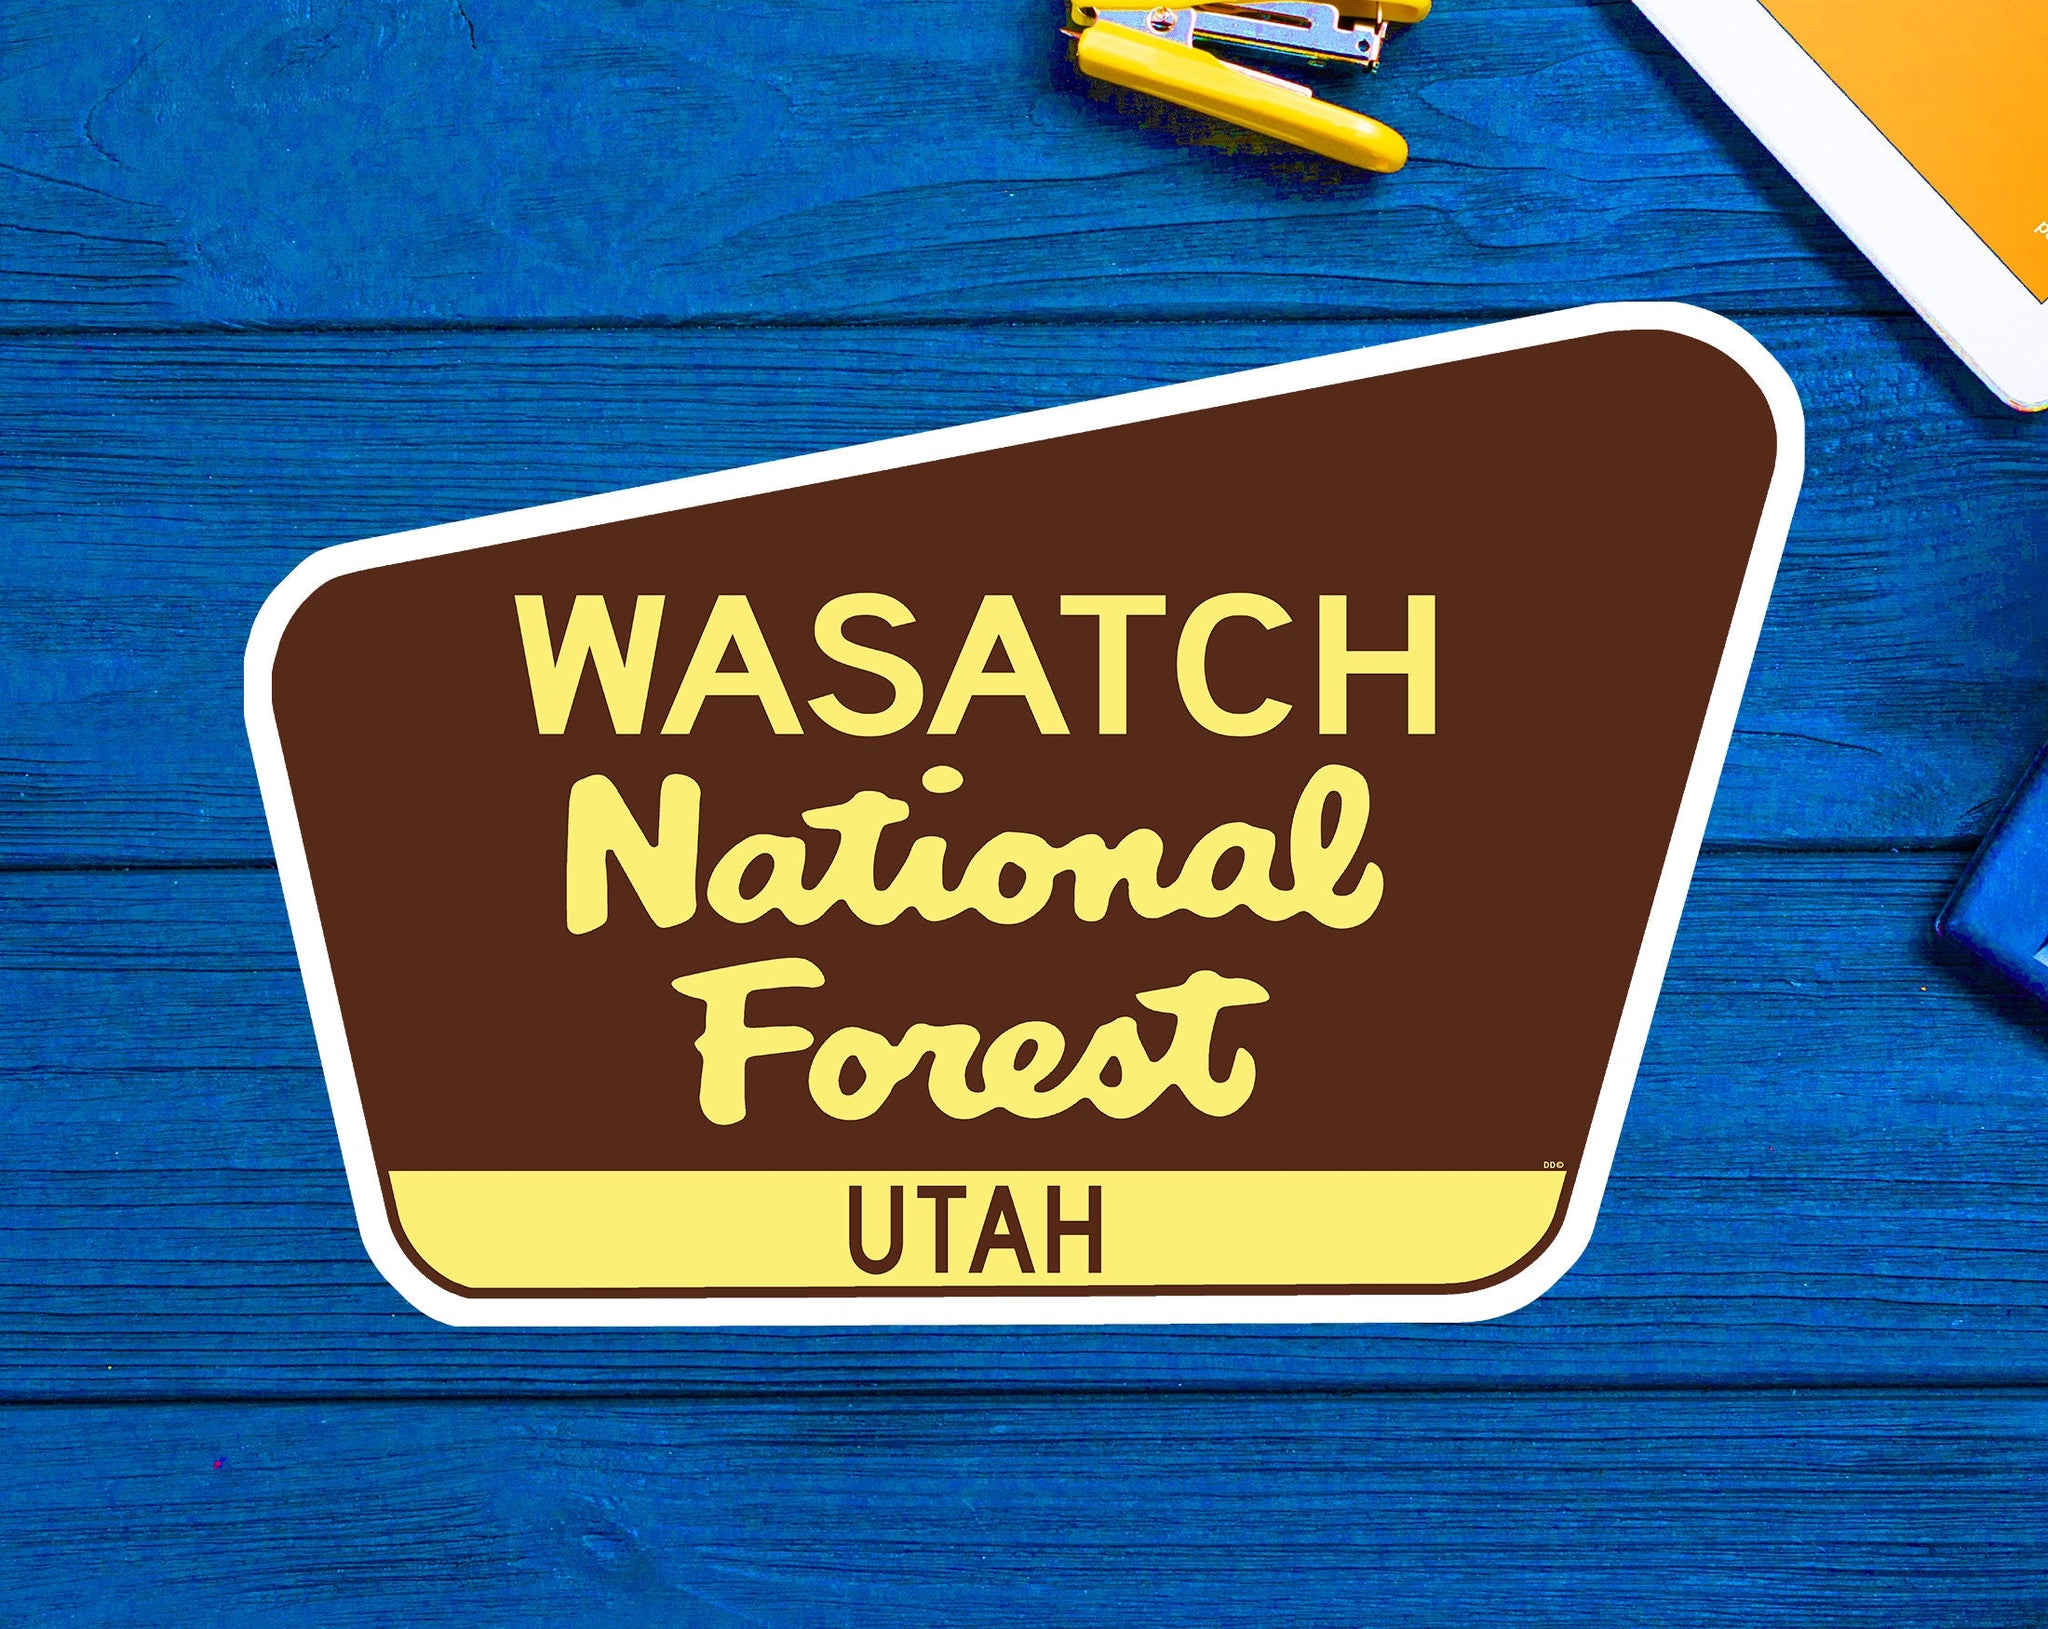 Wasatch National Forest Decal Sticker Vinyl Utah 3.75" x 2.45"